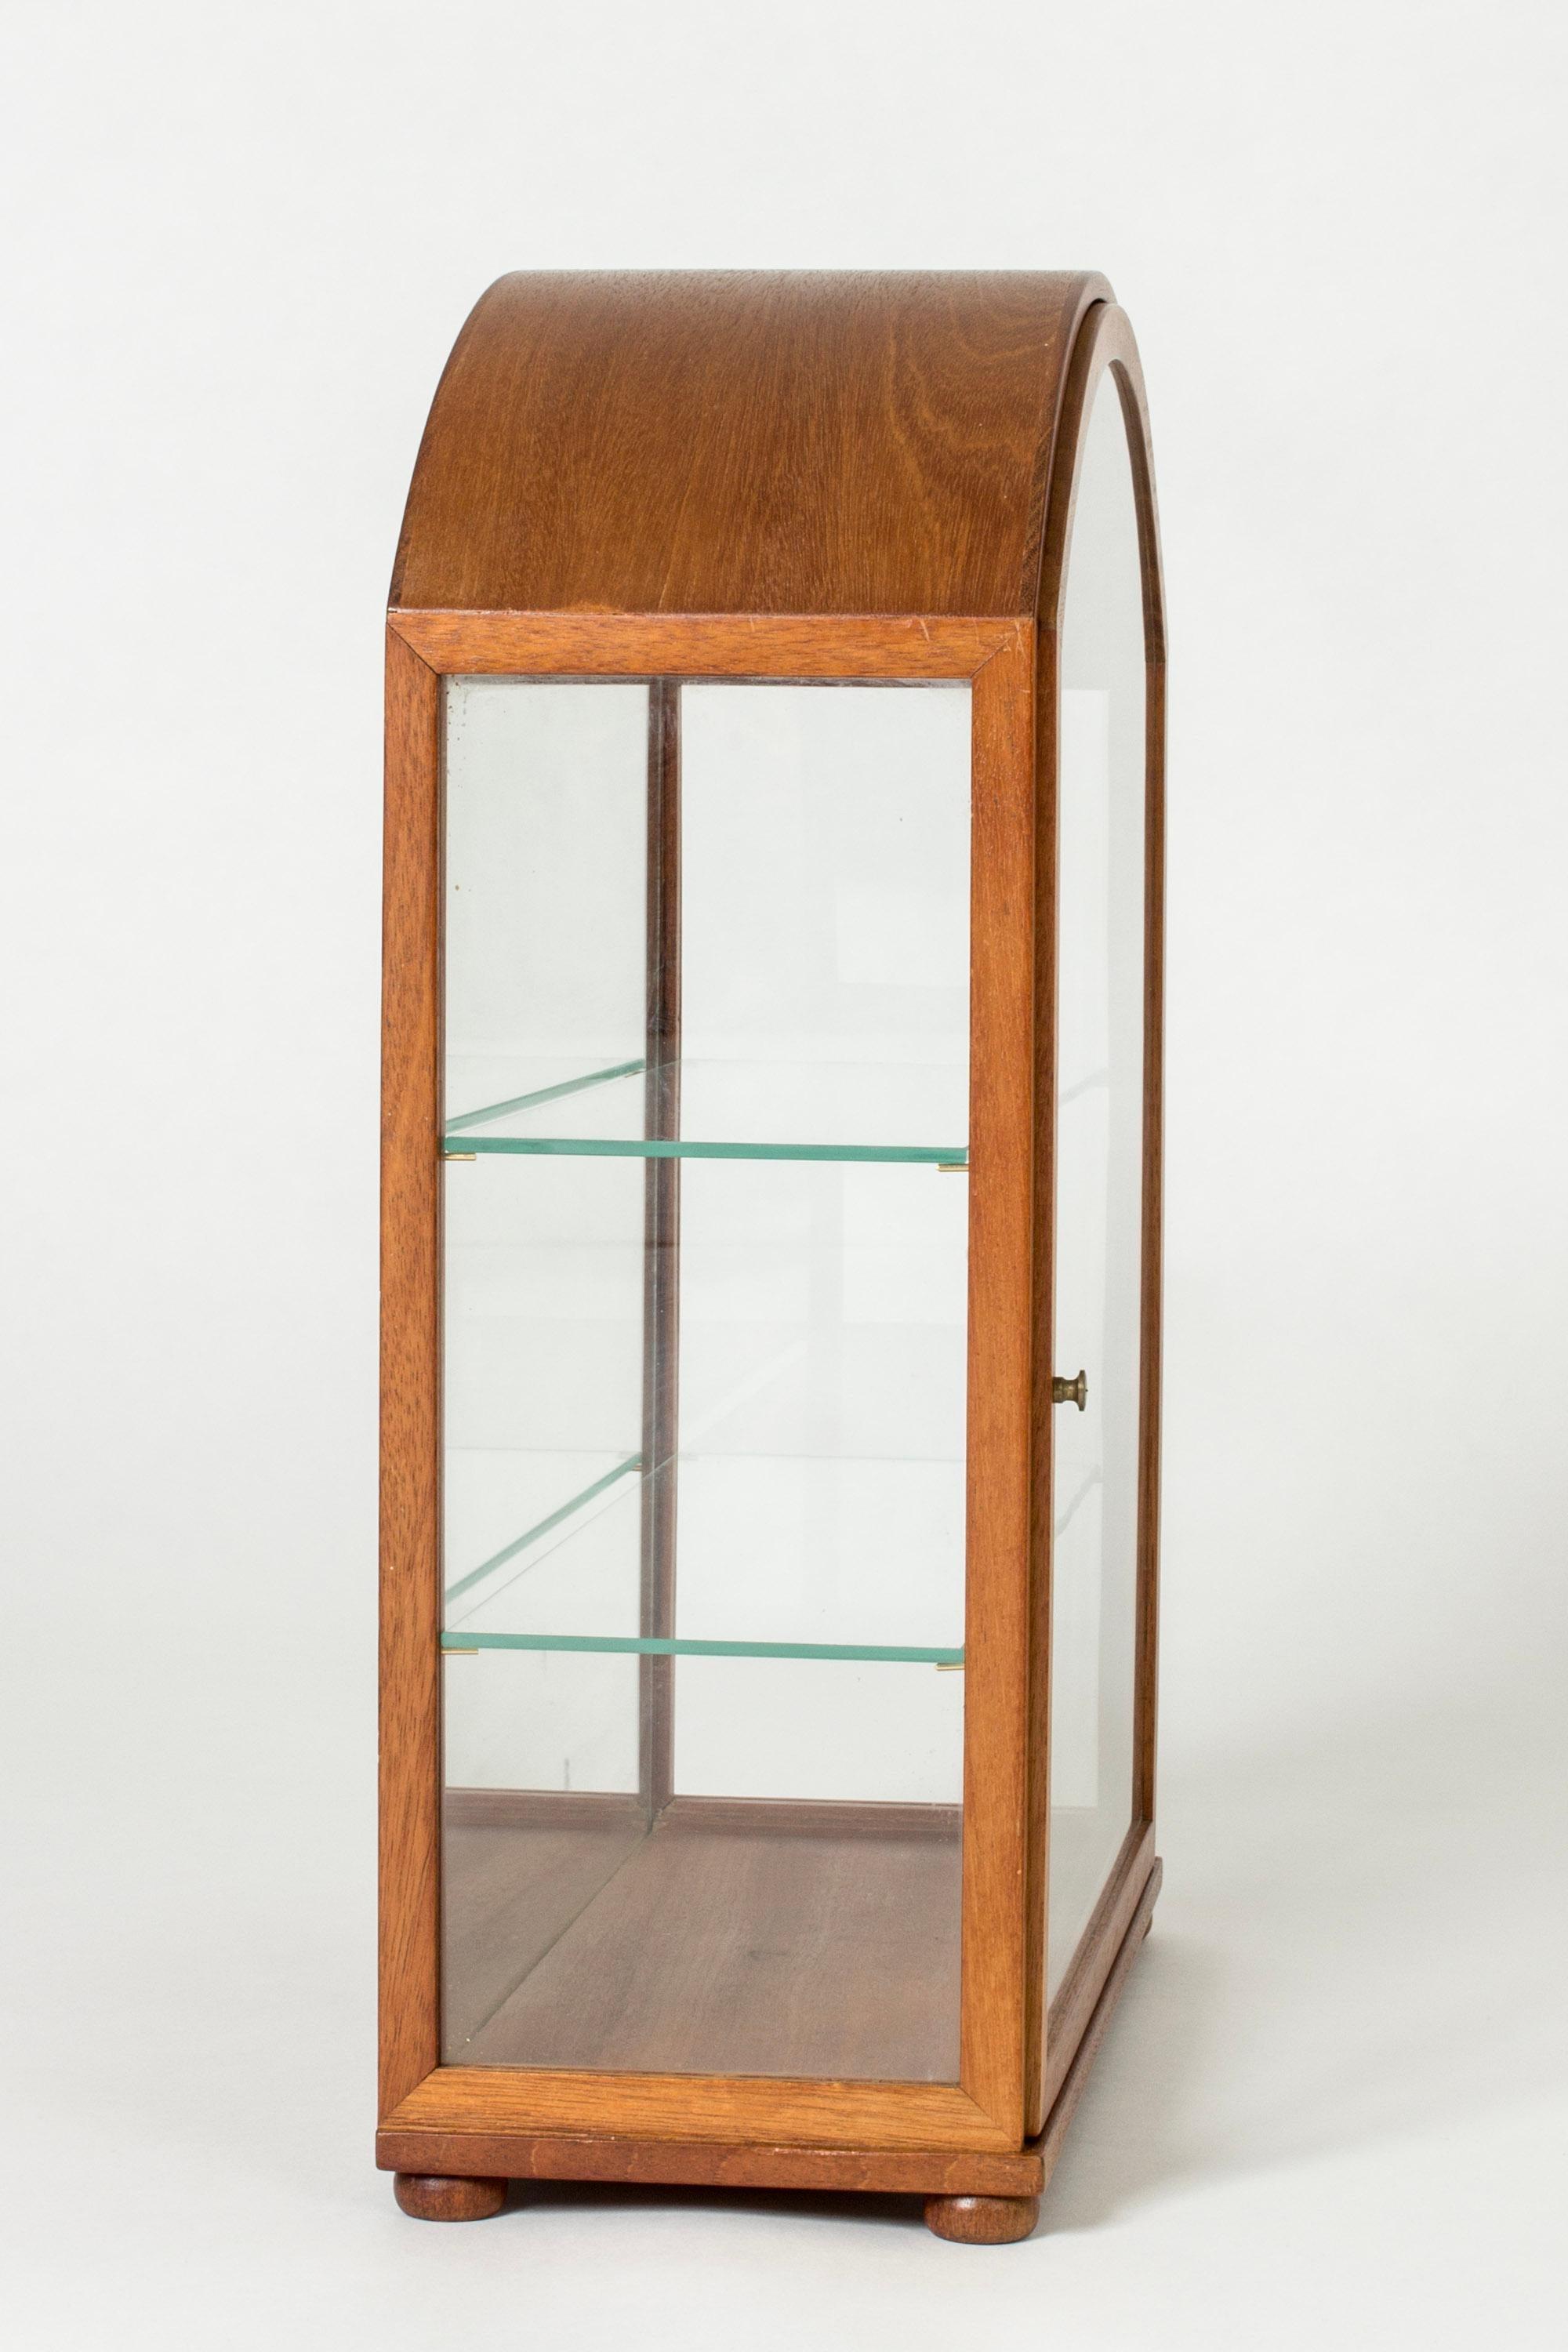 Swedish Vintage Modernist Table Vitrine Cabinet by Josef Frank, Svenskt Tenn, 1950s For Sale